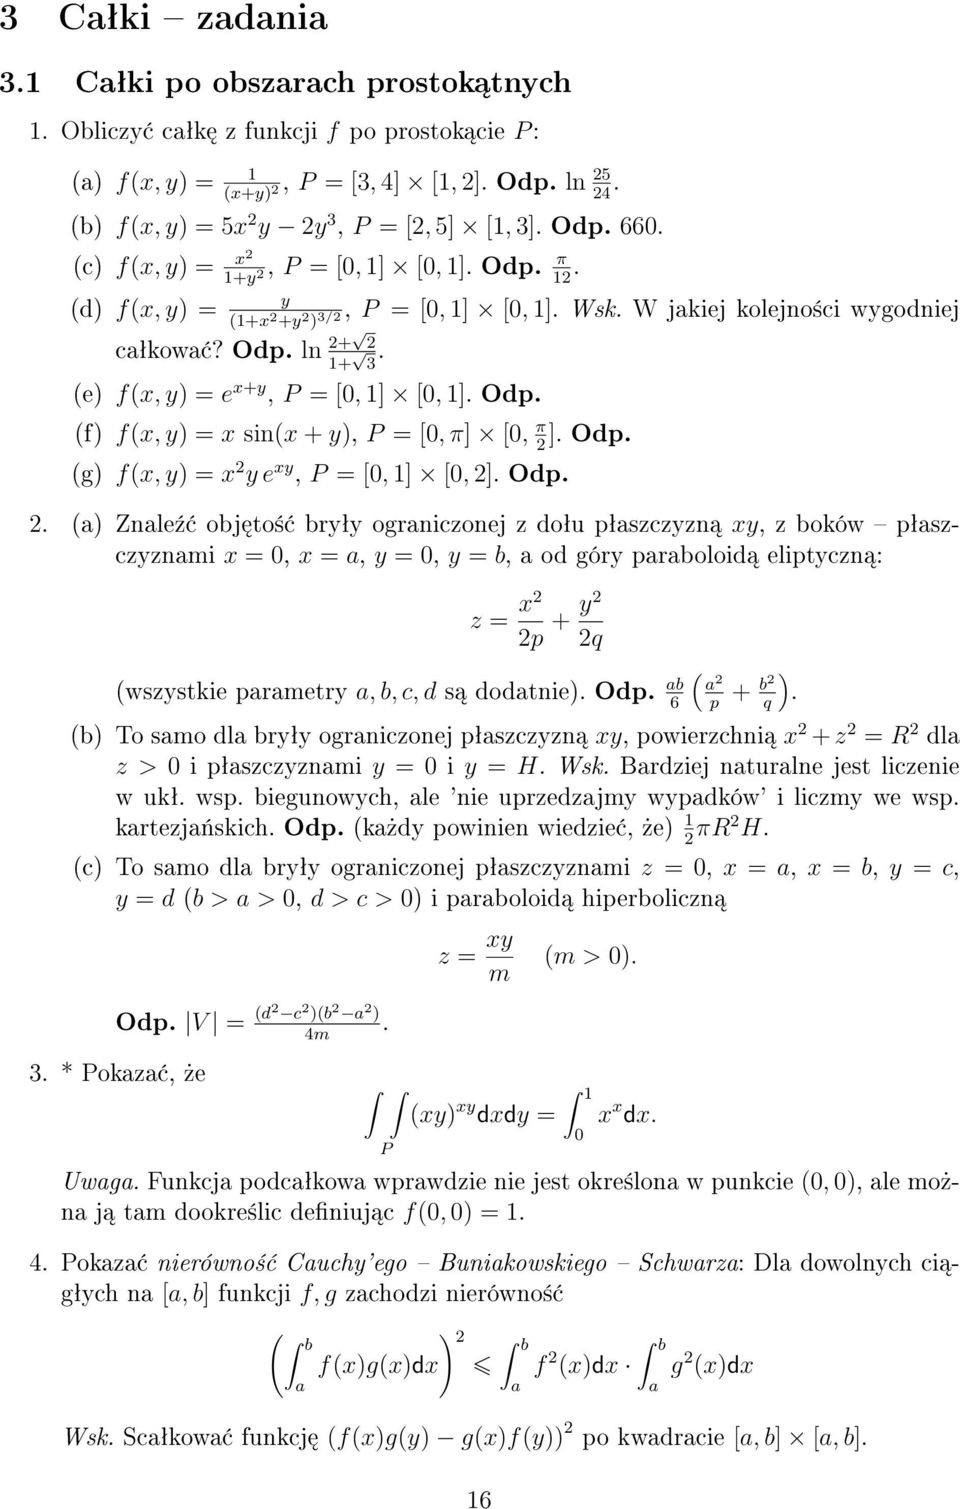 Odp. (f) f(x, y) = x sin(x + y), = [0, π] [0, π ]. Odp. 2 